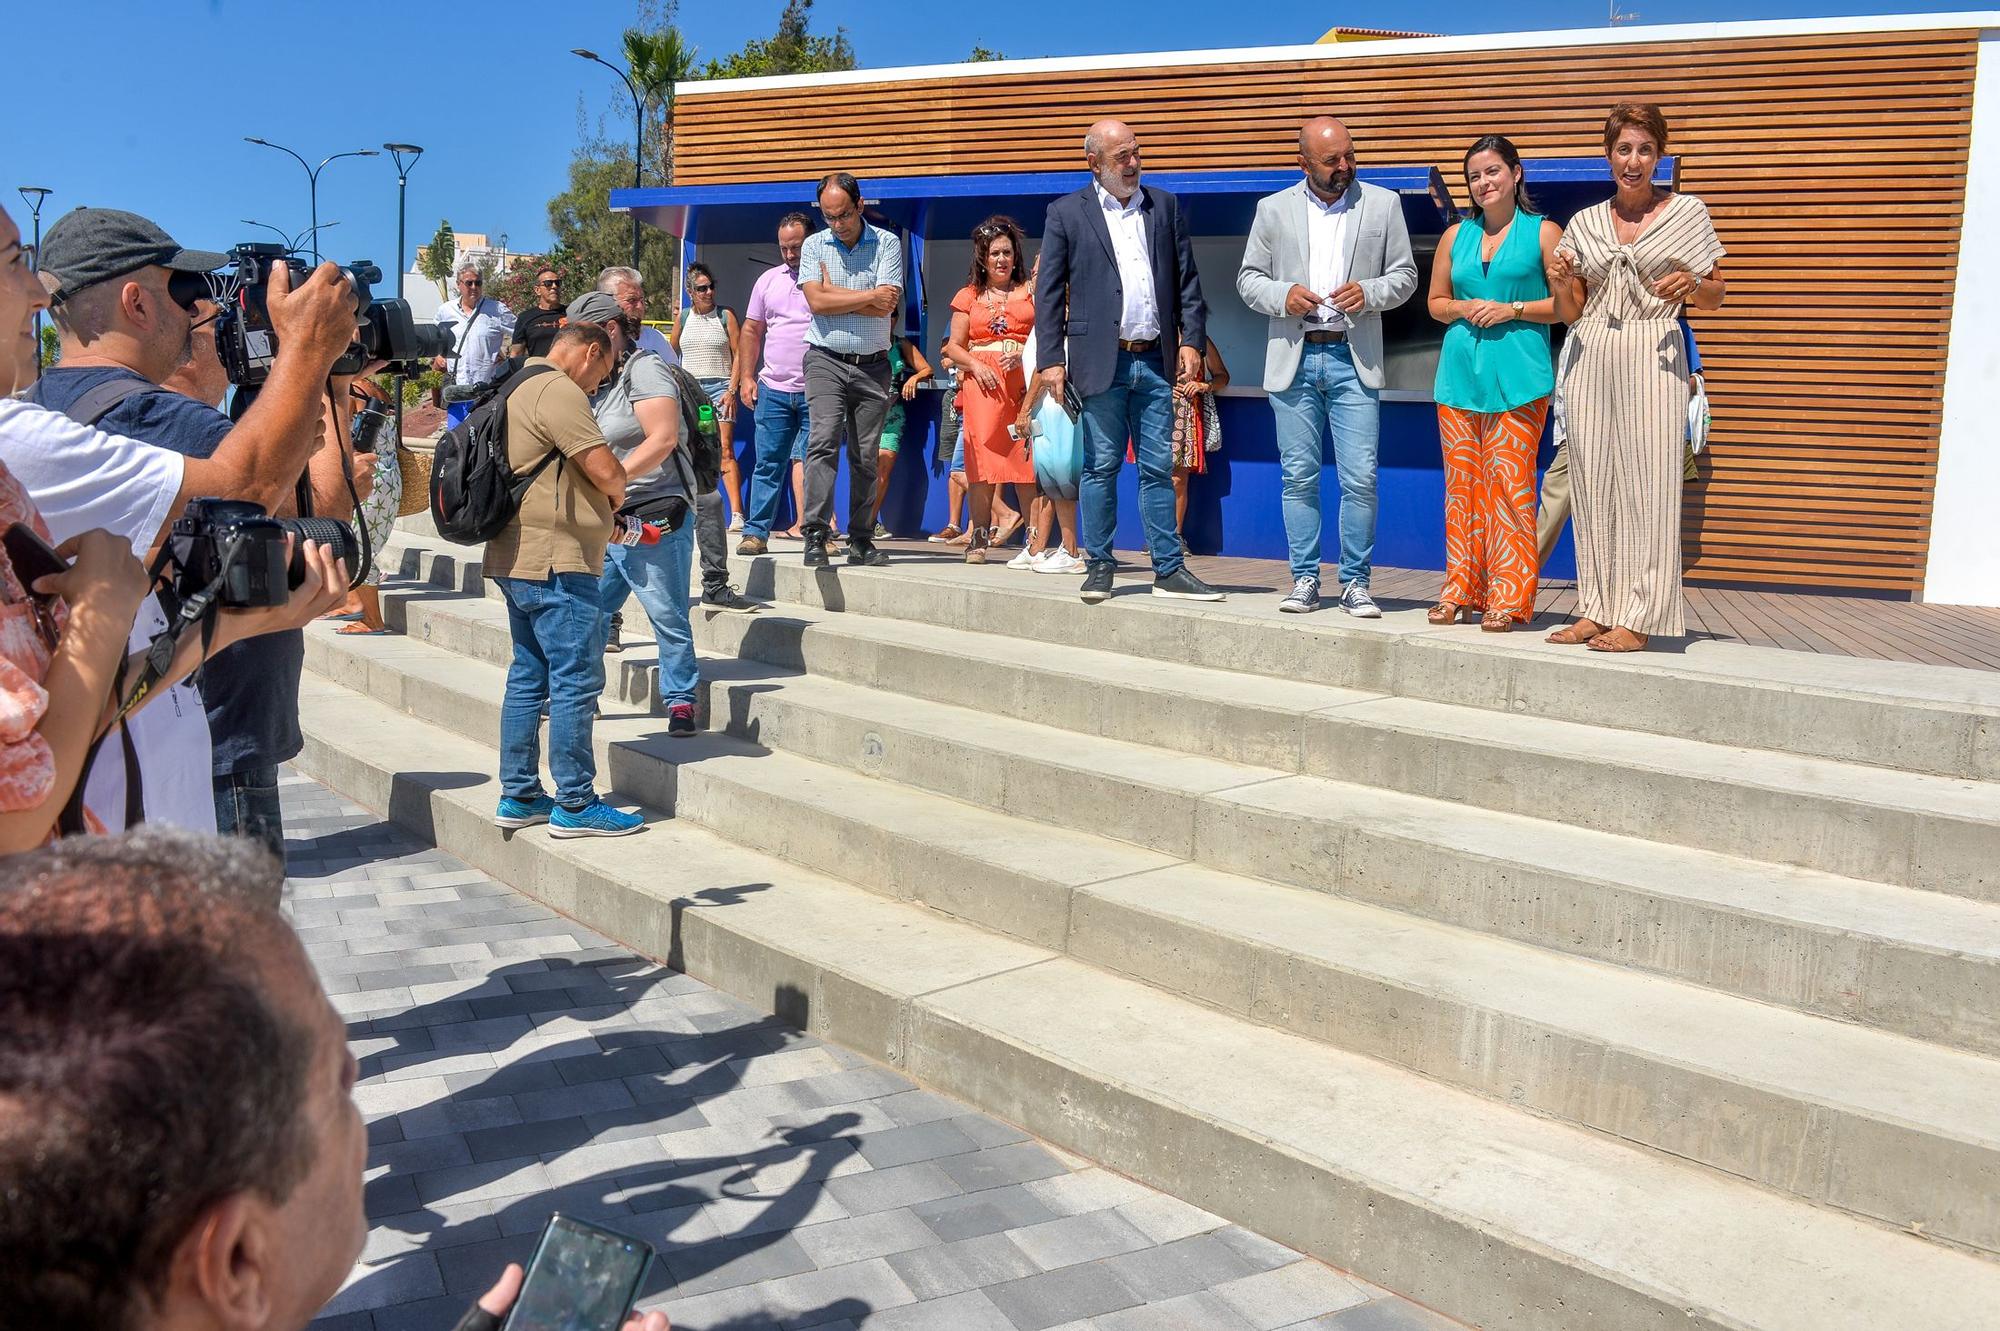 Por la izquierda, el presidente de la FETH, José María Mañaricúa, el consejero insular de Turismo, Carlos Álamo, su homóloga en el Gobierno de Canarias, y la alcaldesa de Mogán, Onalia Bueno, durante el acto de inauguración de la playa de El Perchel tras ser rehabilitada, frente al módulo de restauración.